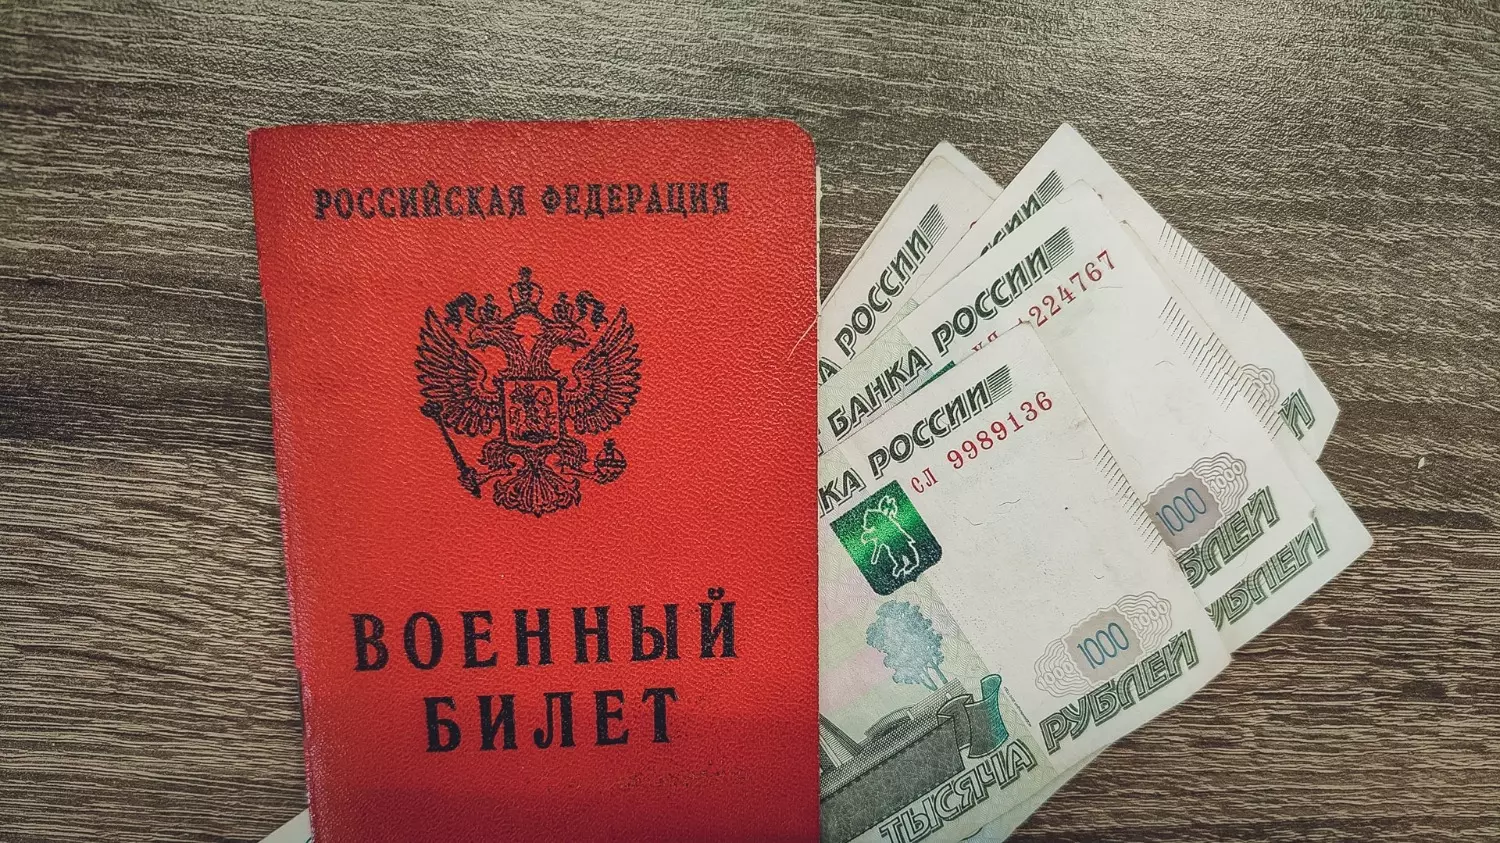 Примерный размер выплат составляет 190 00 рублей